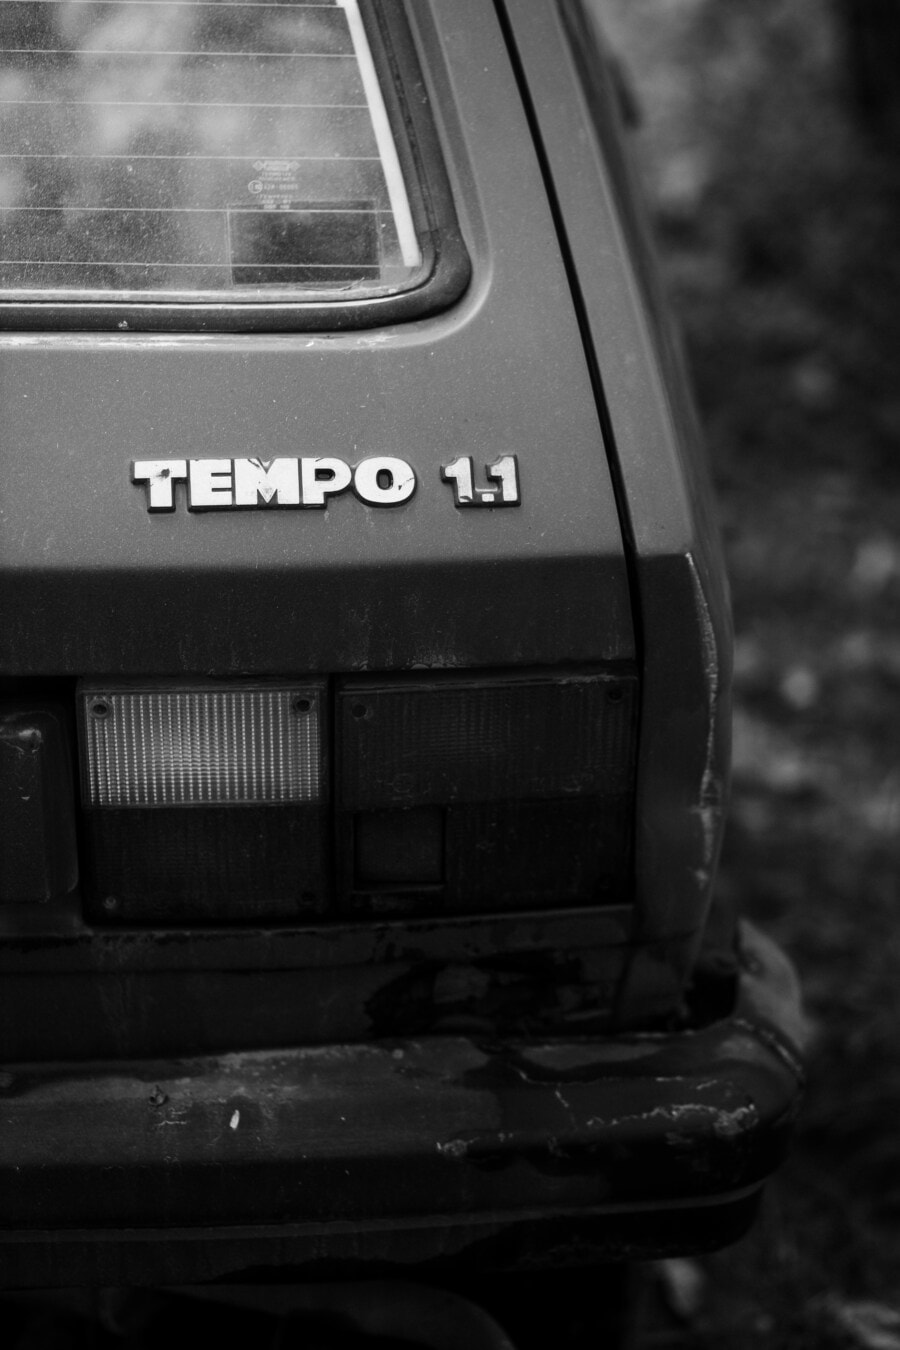 Zastava Yugo Tempo 1.1, 車, 古い, ユーゴスラビア, バンパー, モノクロ, レトロ, 車両, クラシック, 放棄, 黒と白